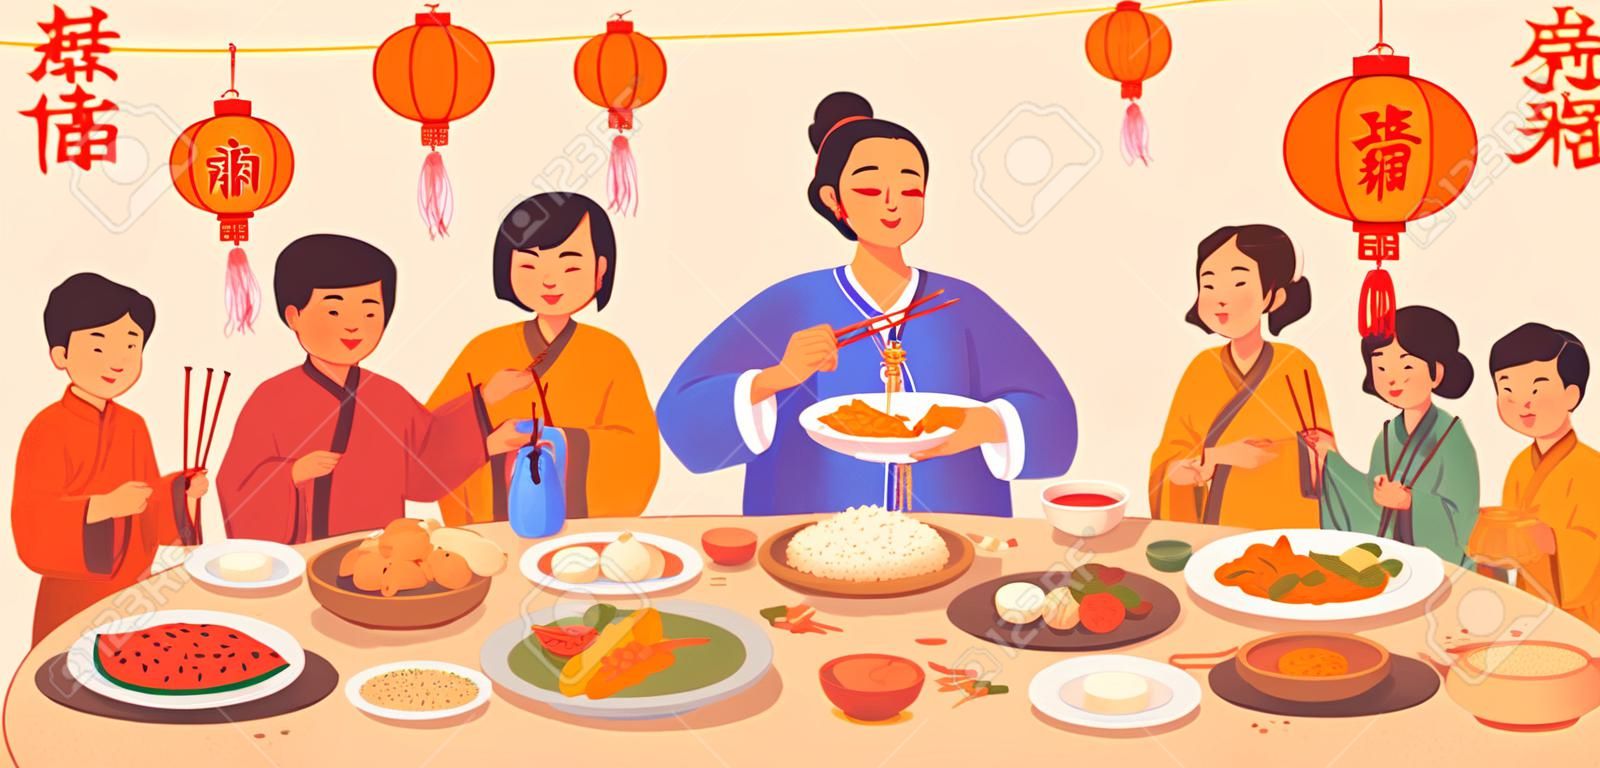 중국 새해 문자 번역, 접시에 음식을 곁들인 갈라 디너, 젓가락을 들고 있는 사람들의 손, 붉은 등 장식. 전통 중국 요리 요리, 생선과 쌀, 만두, 야채